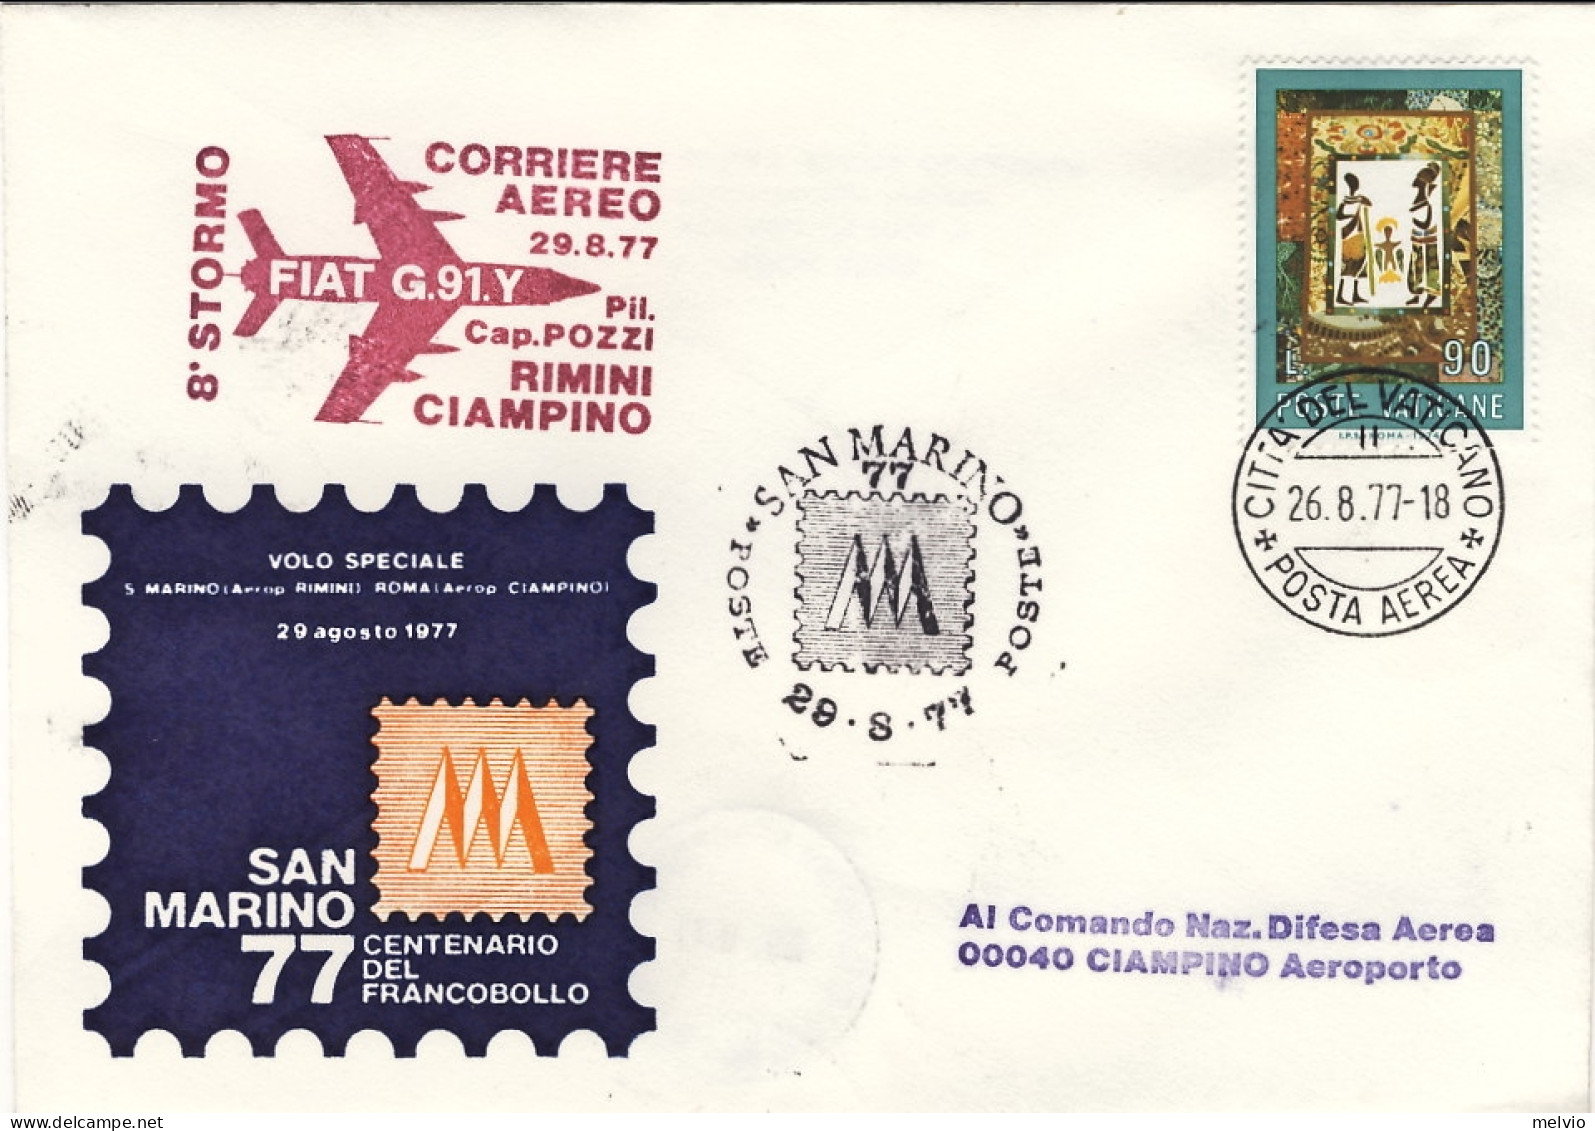 Vaticano-1977 Bollo Corriere Aereo 8 Stormo Fiat G.91 Y Pil.Cap.PozzI^volo Speci - Airmail